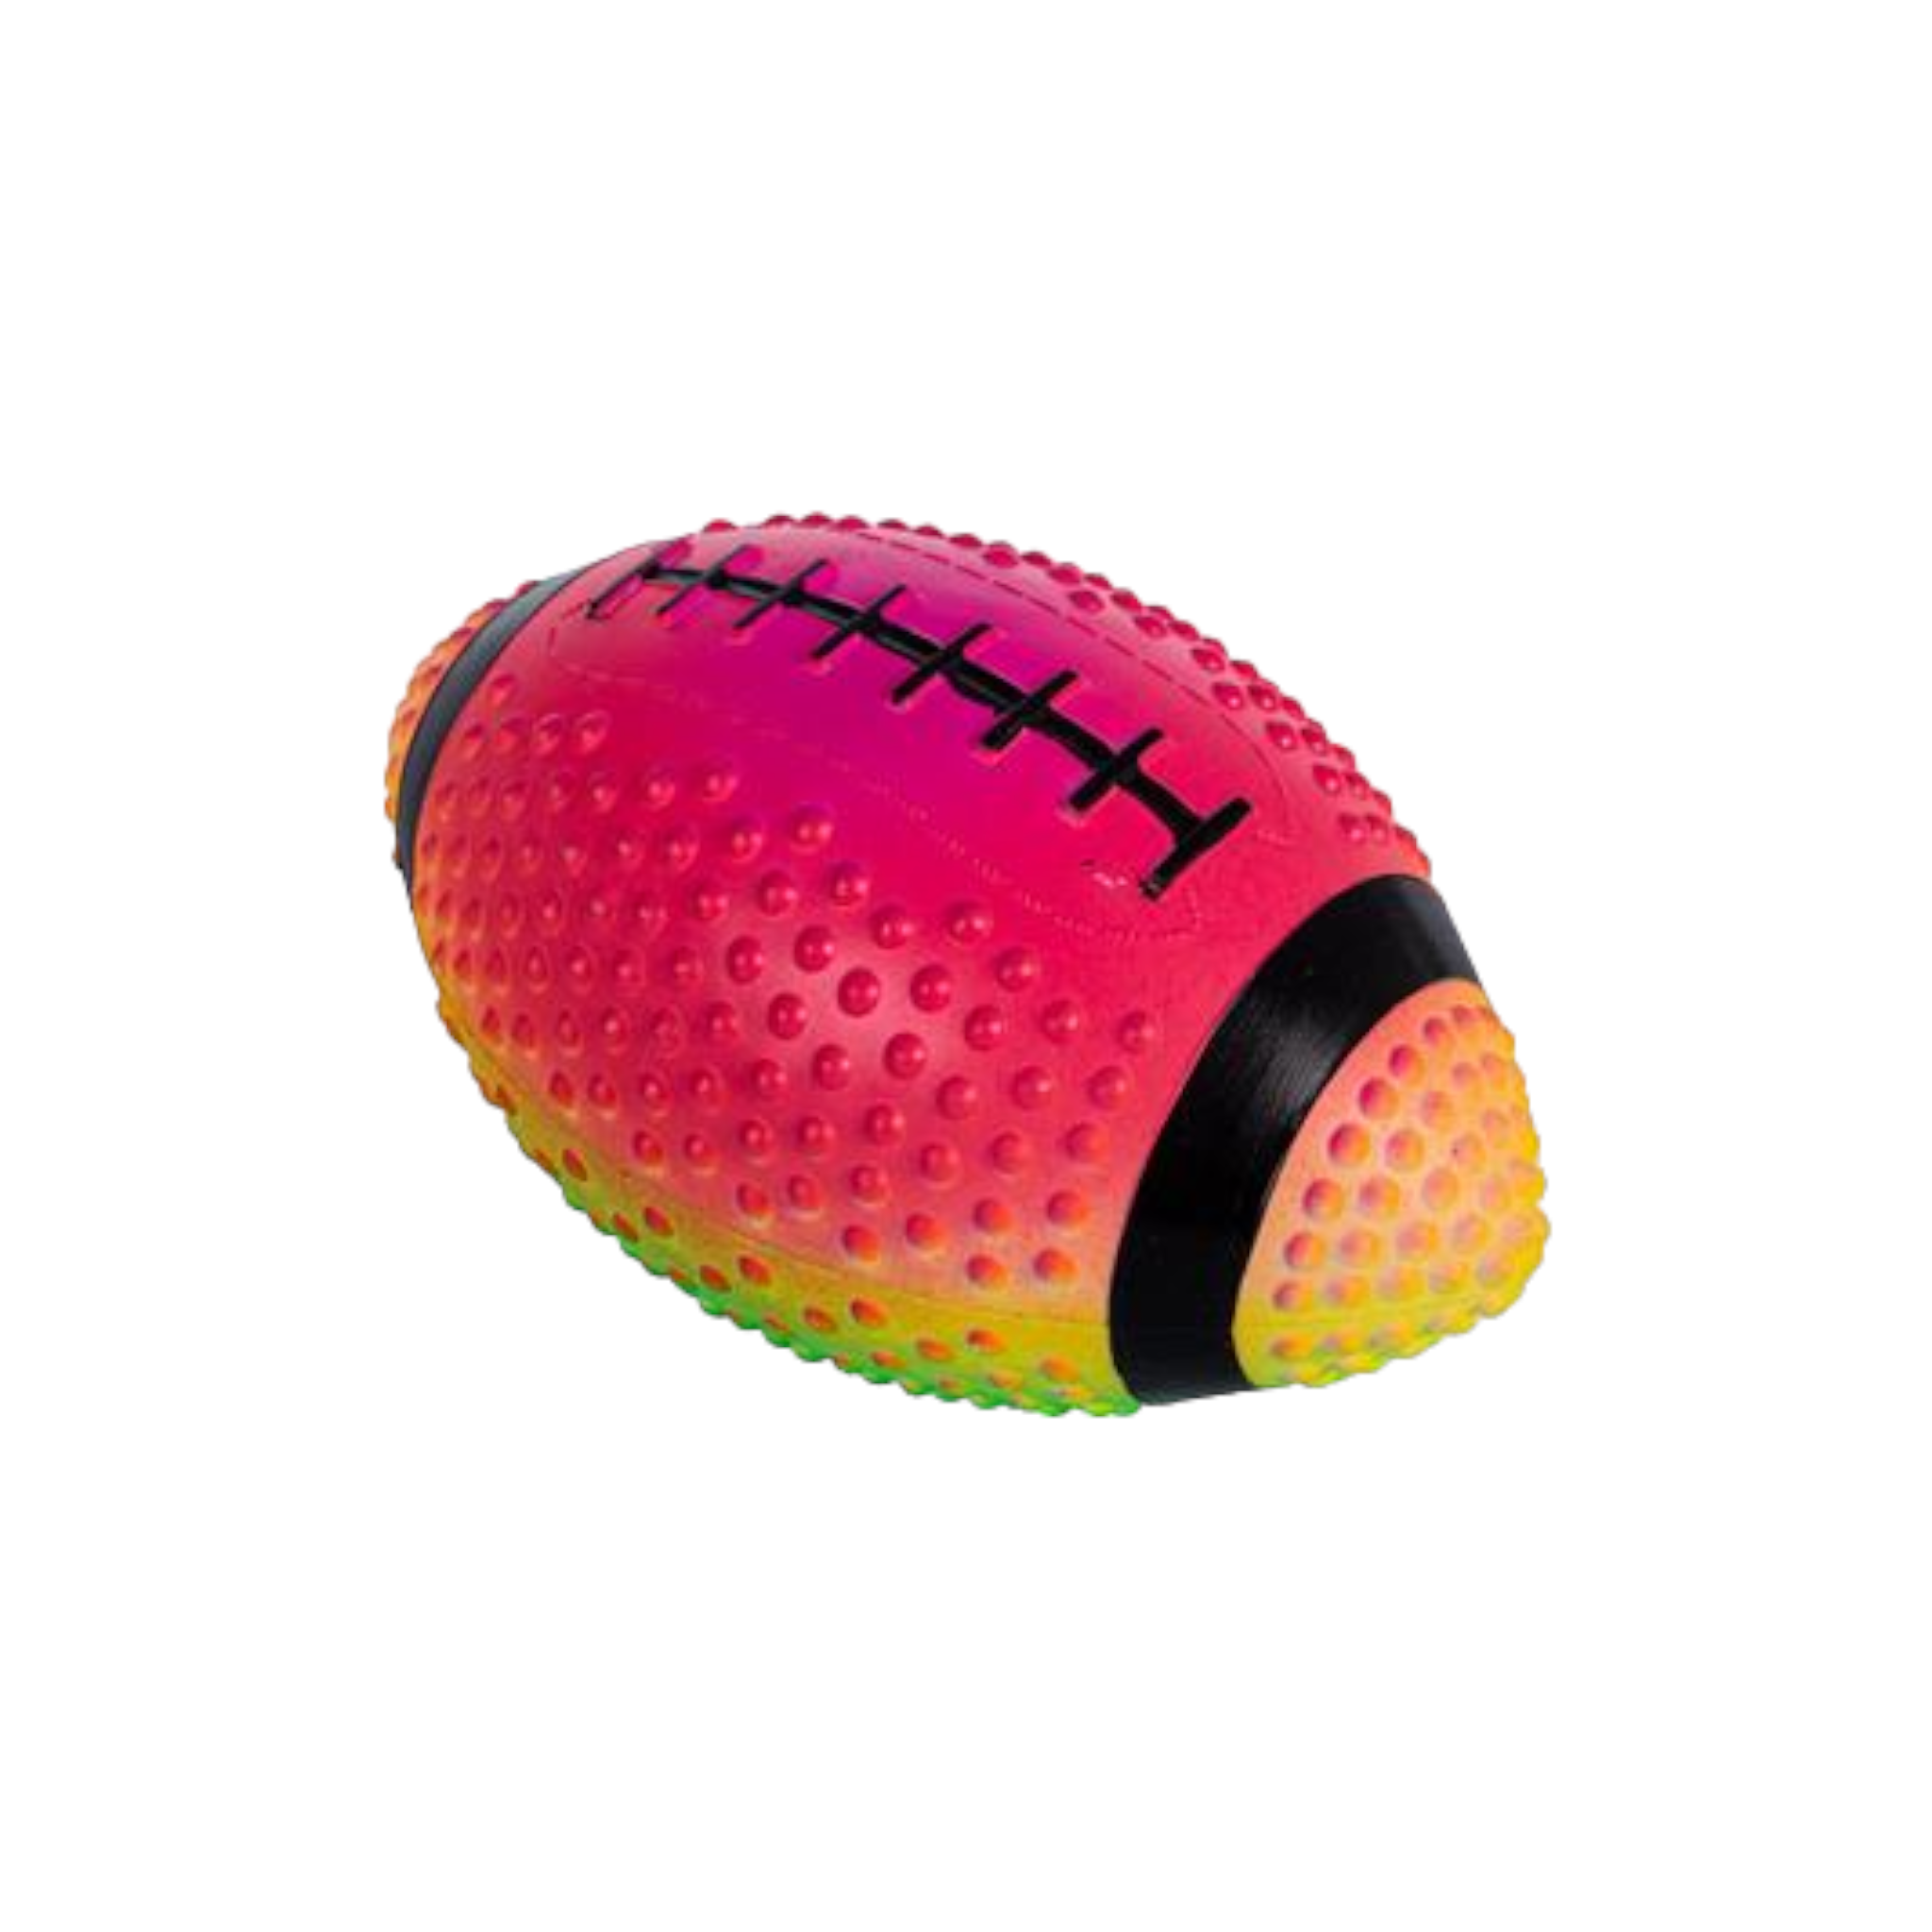 Rainbow Rugby Ball Grippy 21cm